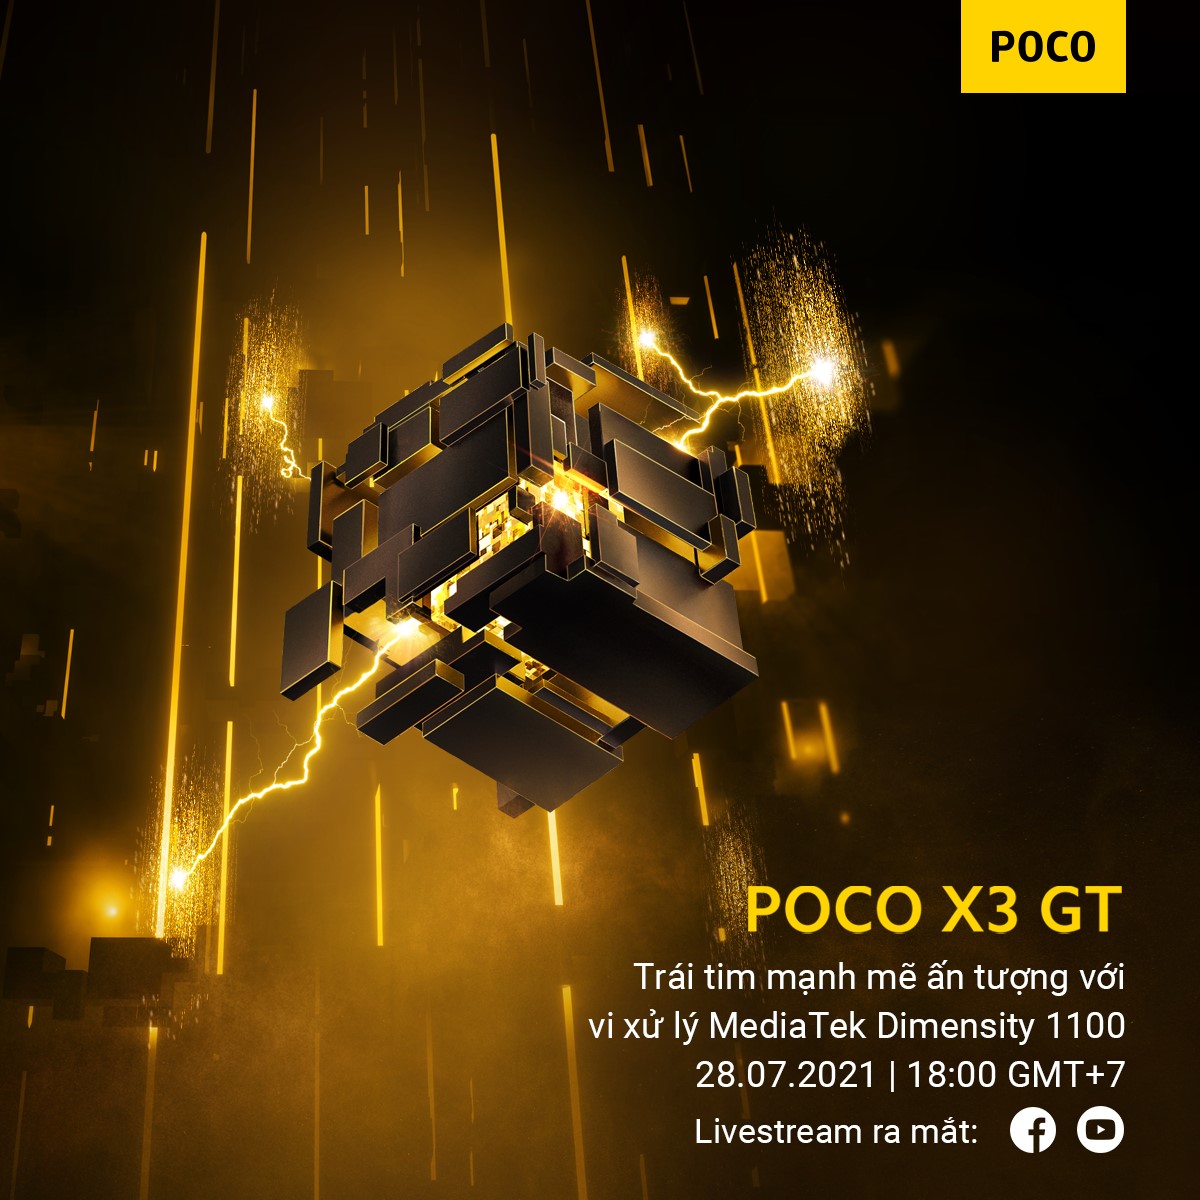 Xiaomi giới thiệu trực tuyến sản phẩm mới POCO X3 GT tại thị trường Việt Nam vào tối nay